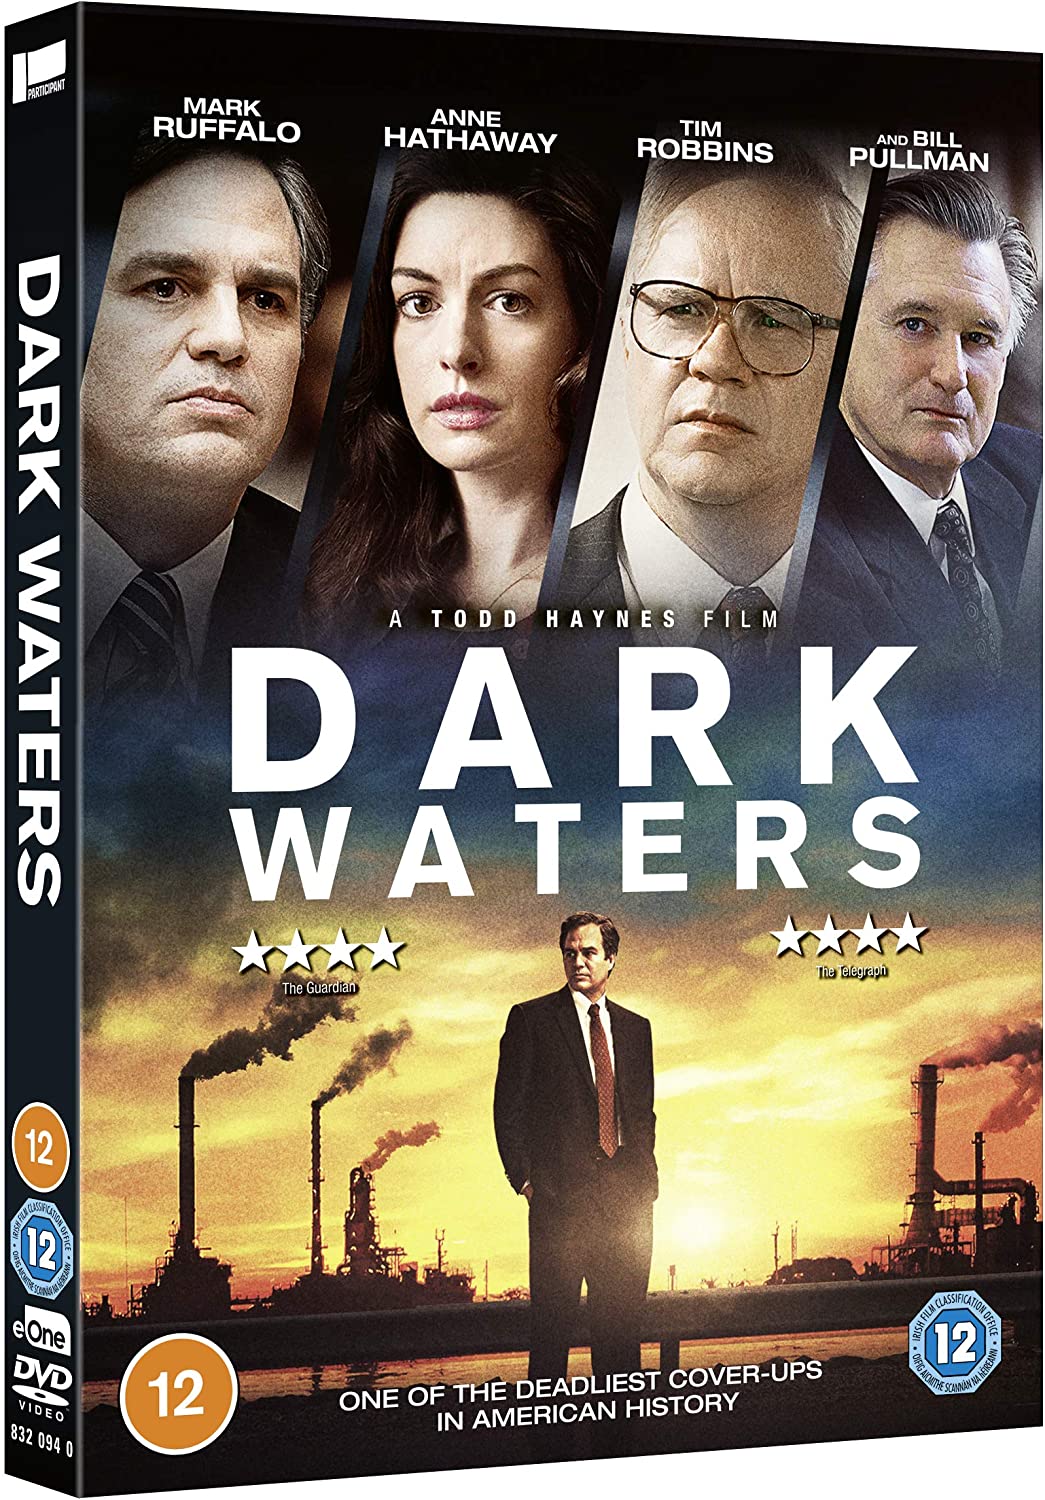 Dark Waters - Drama/Thriller [DVD]